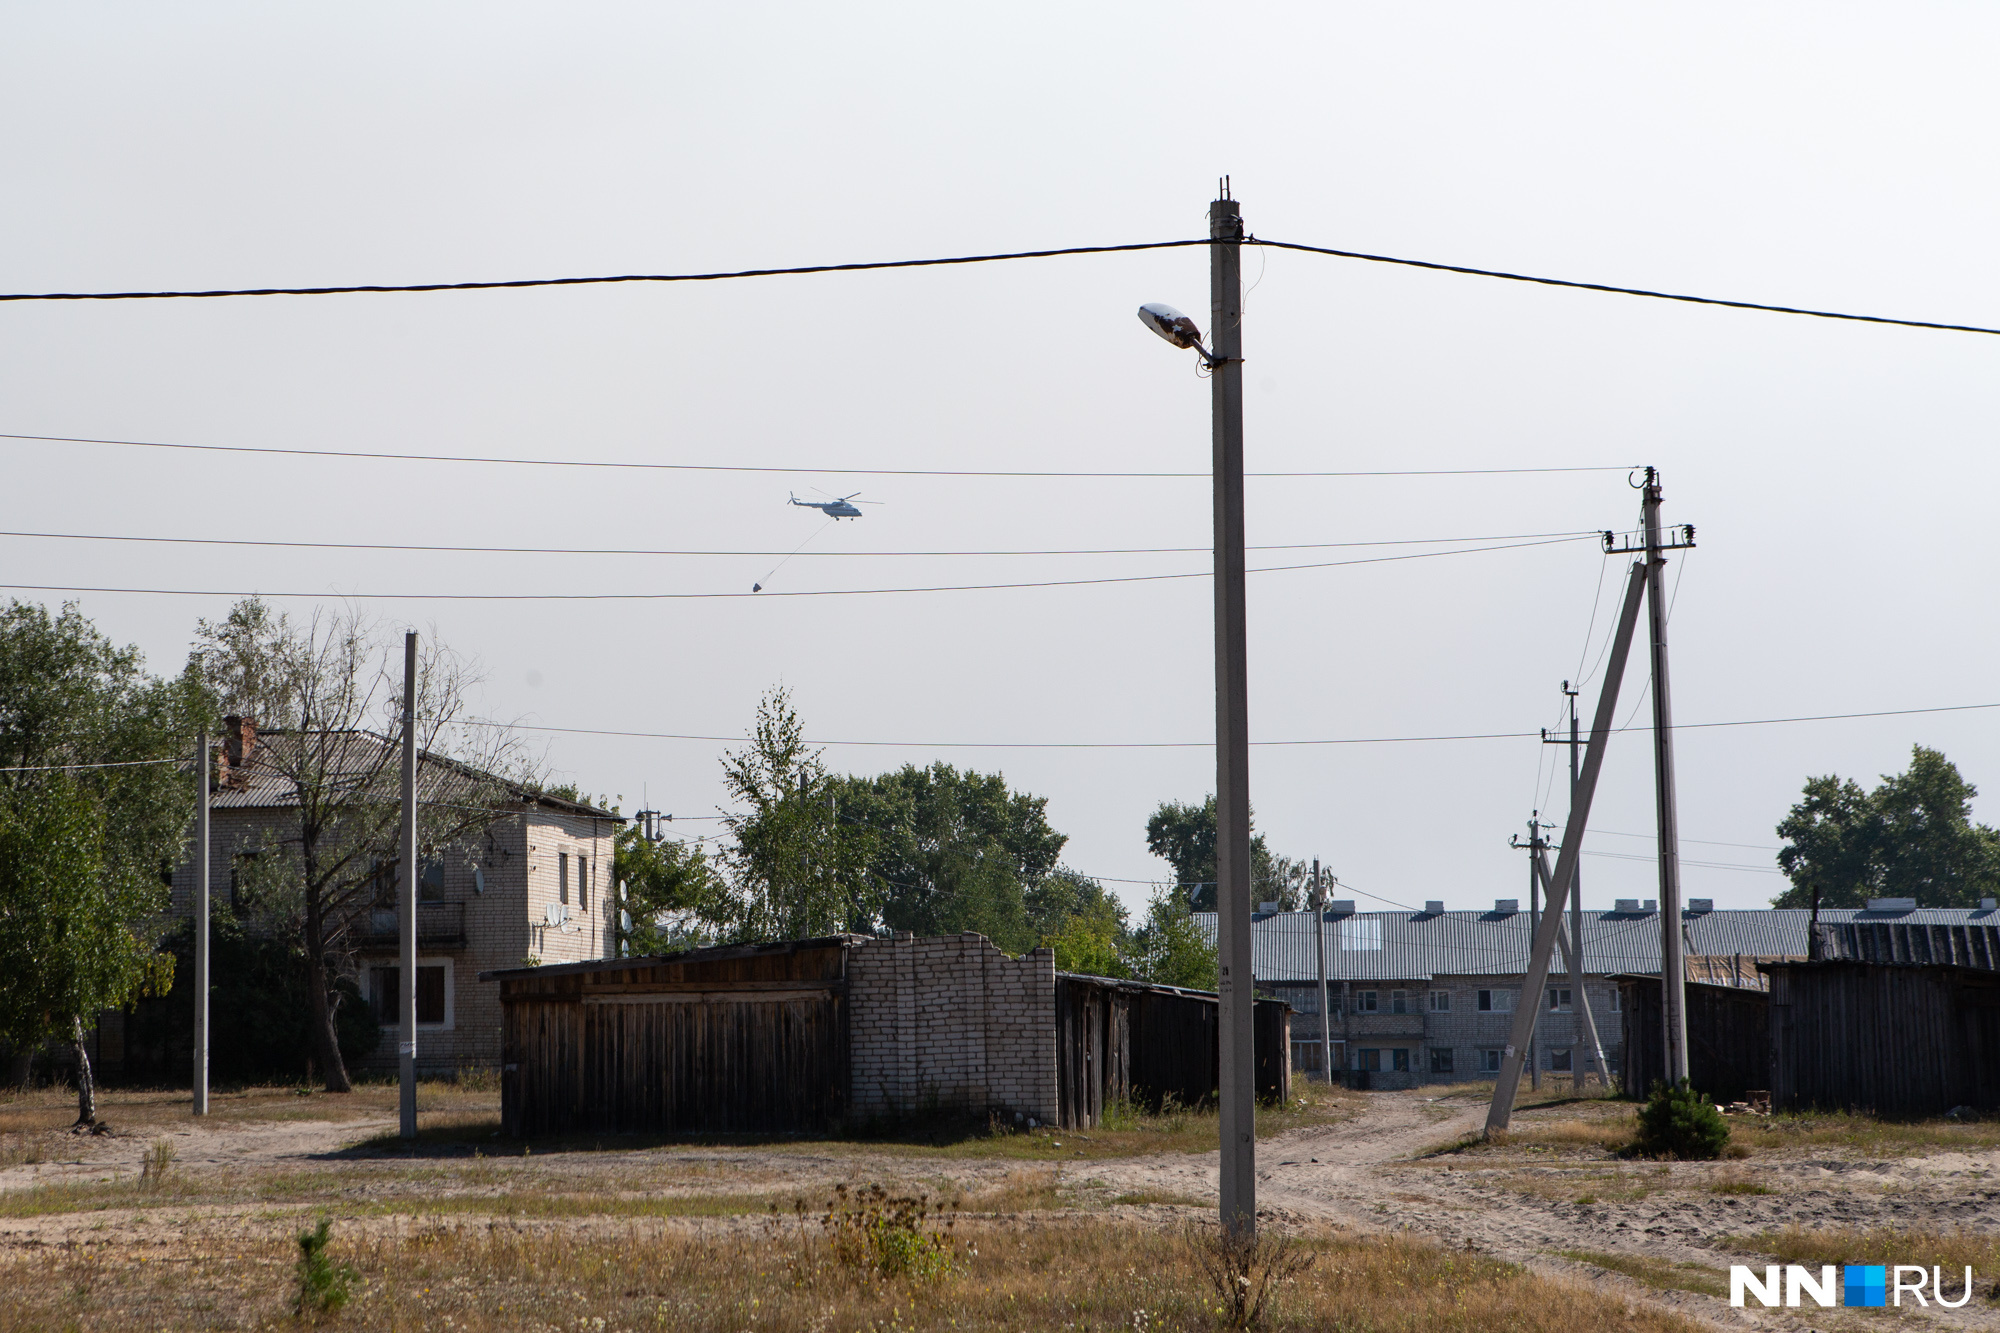 Над поселком можно увидеть вертолеты, занятые в тушении пожара